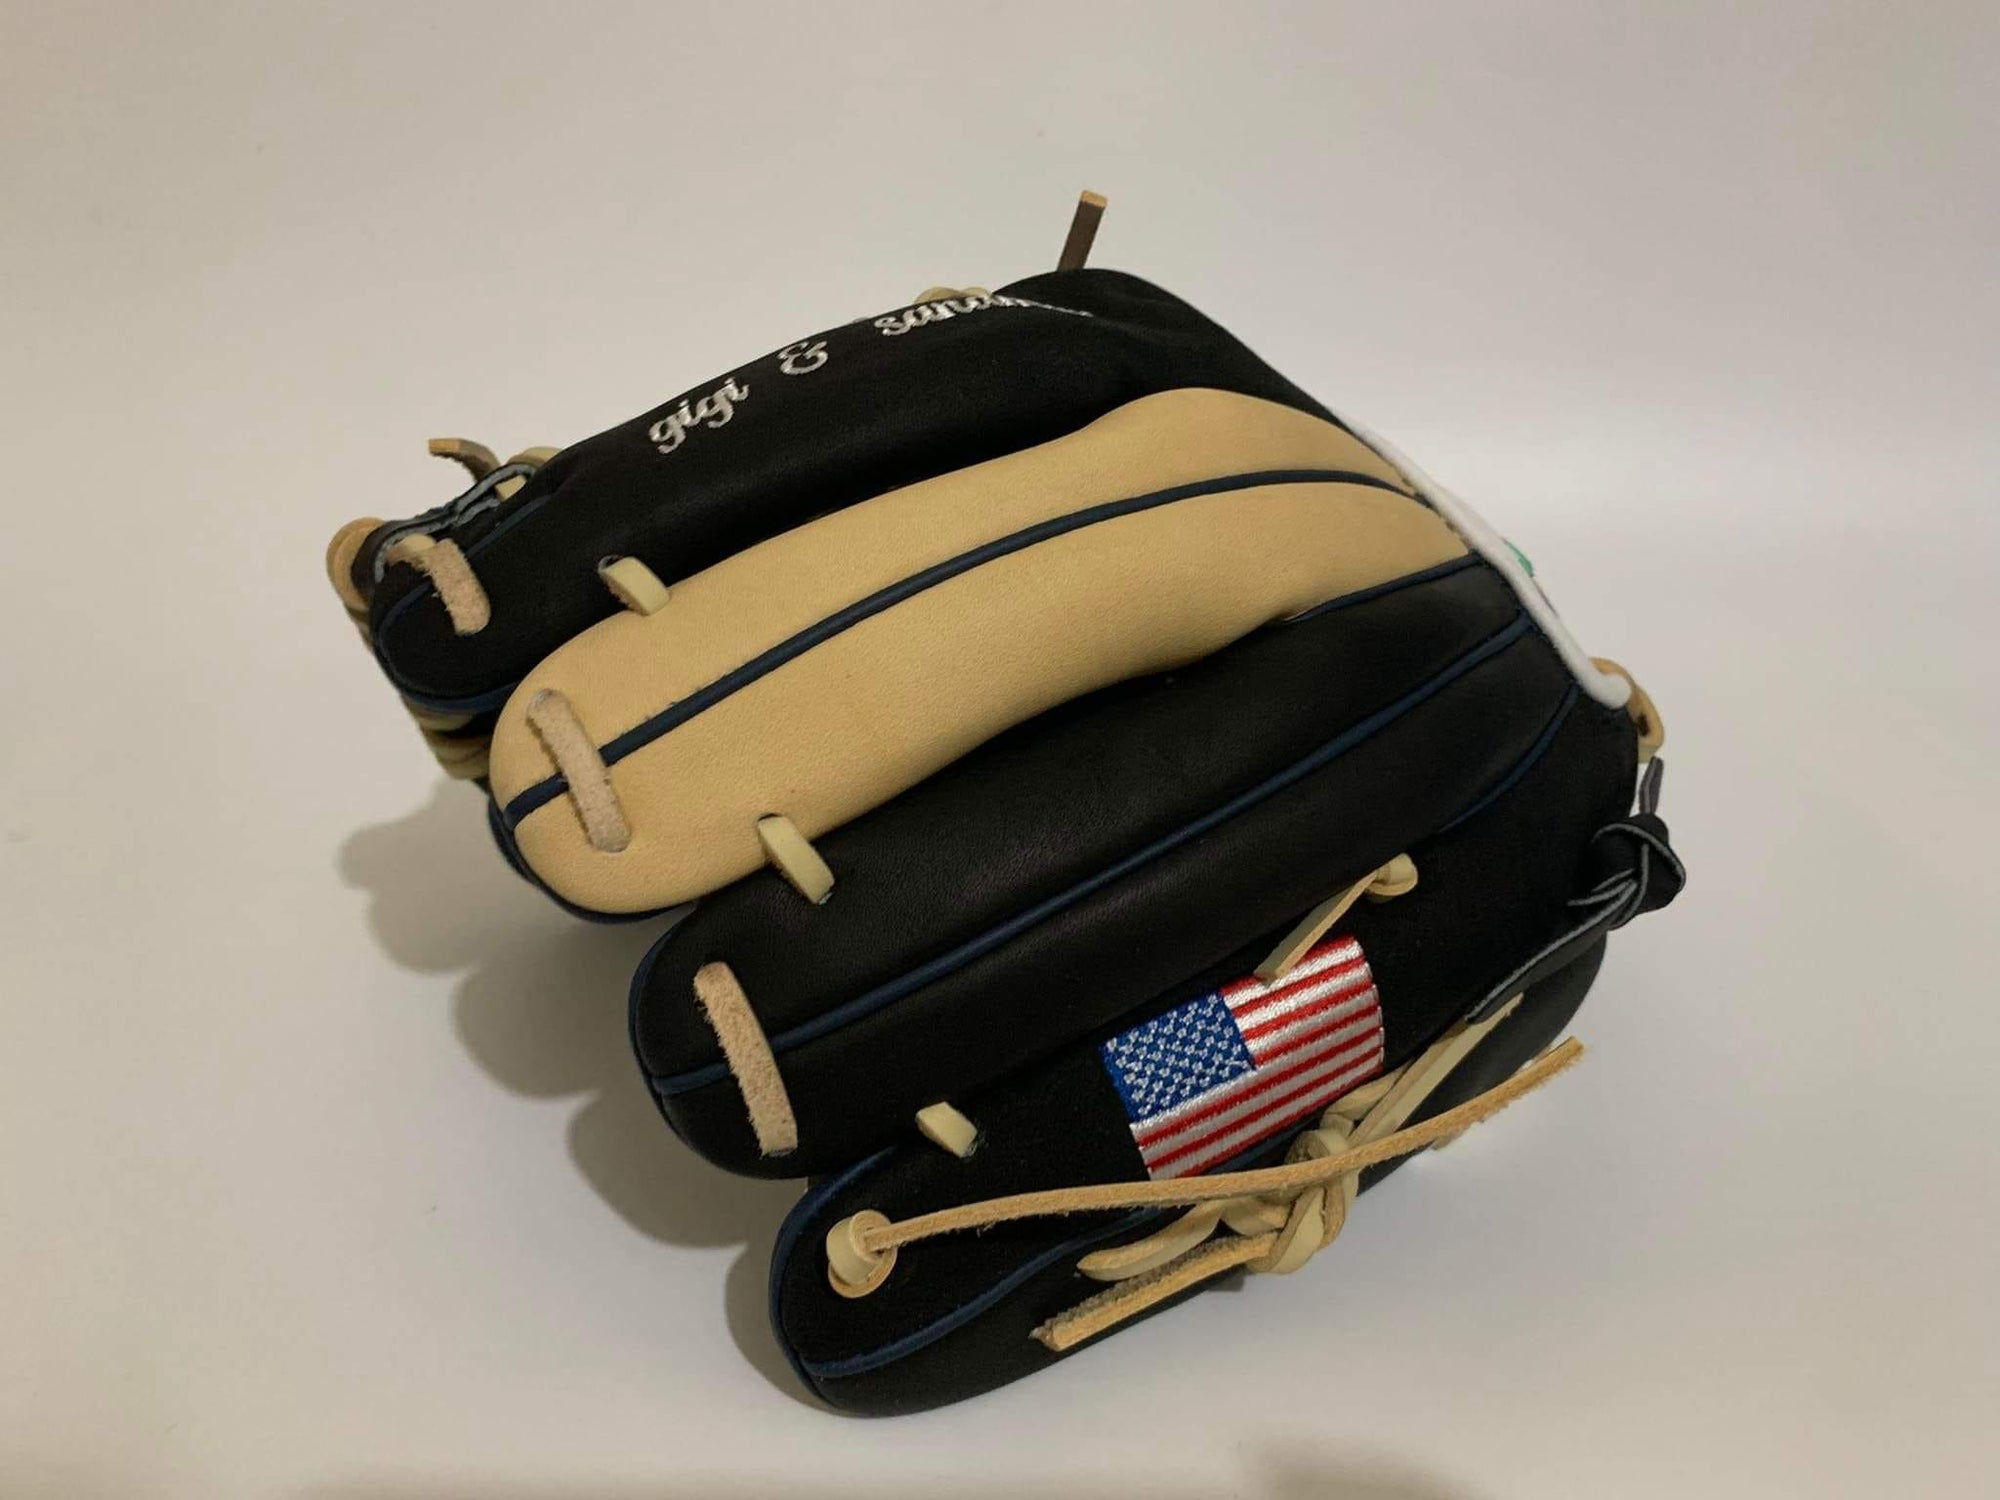 Why Get A Custom Baseball Glove?